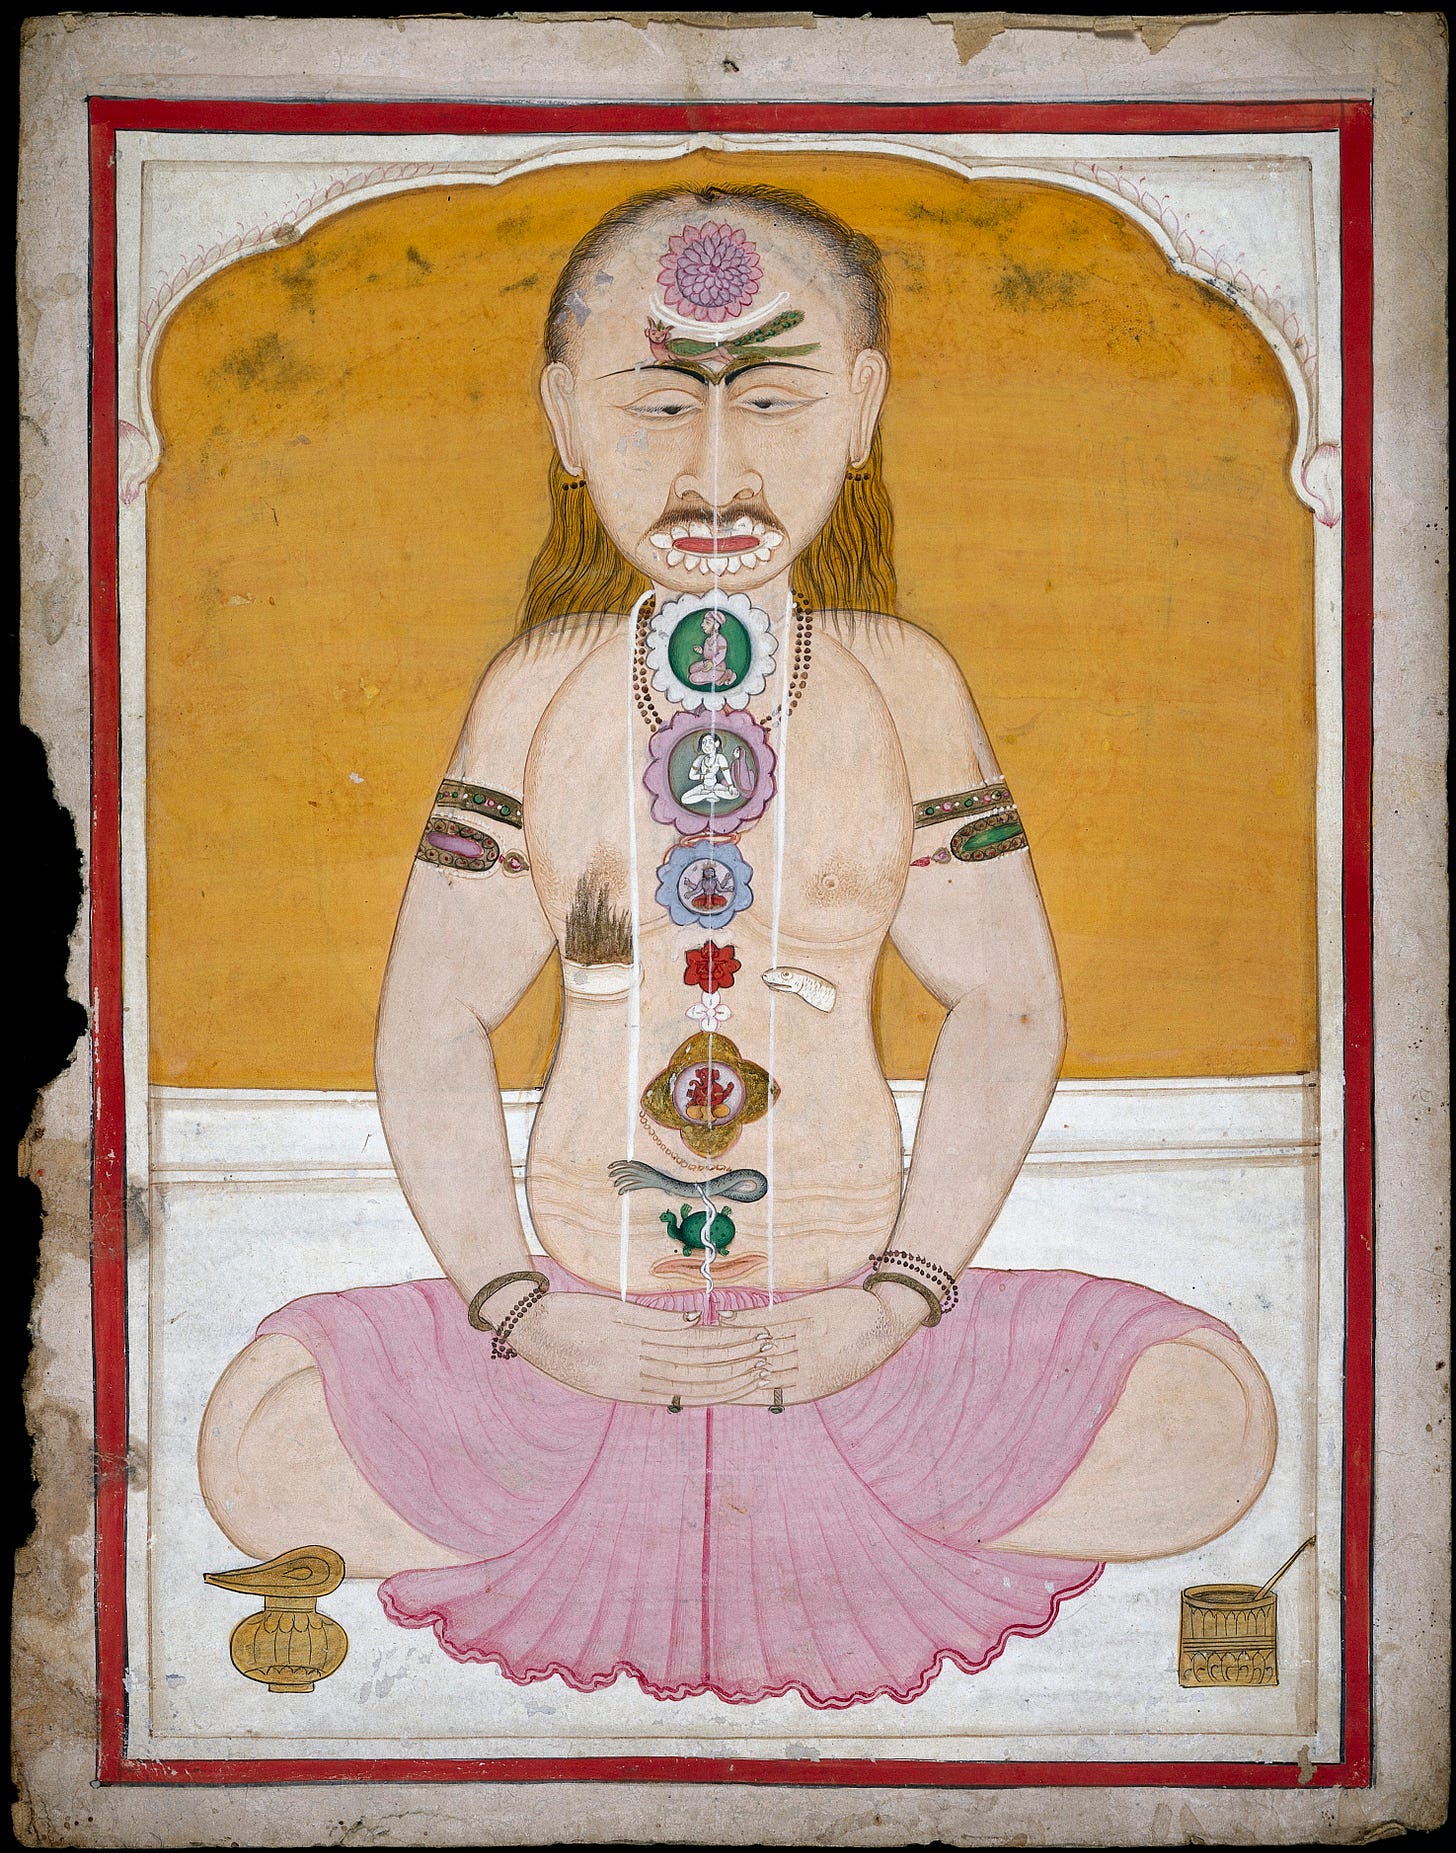 Kundalini yoga - Wikipedia